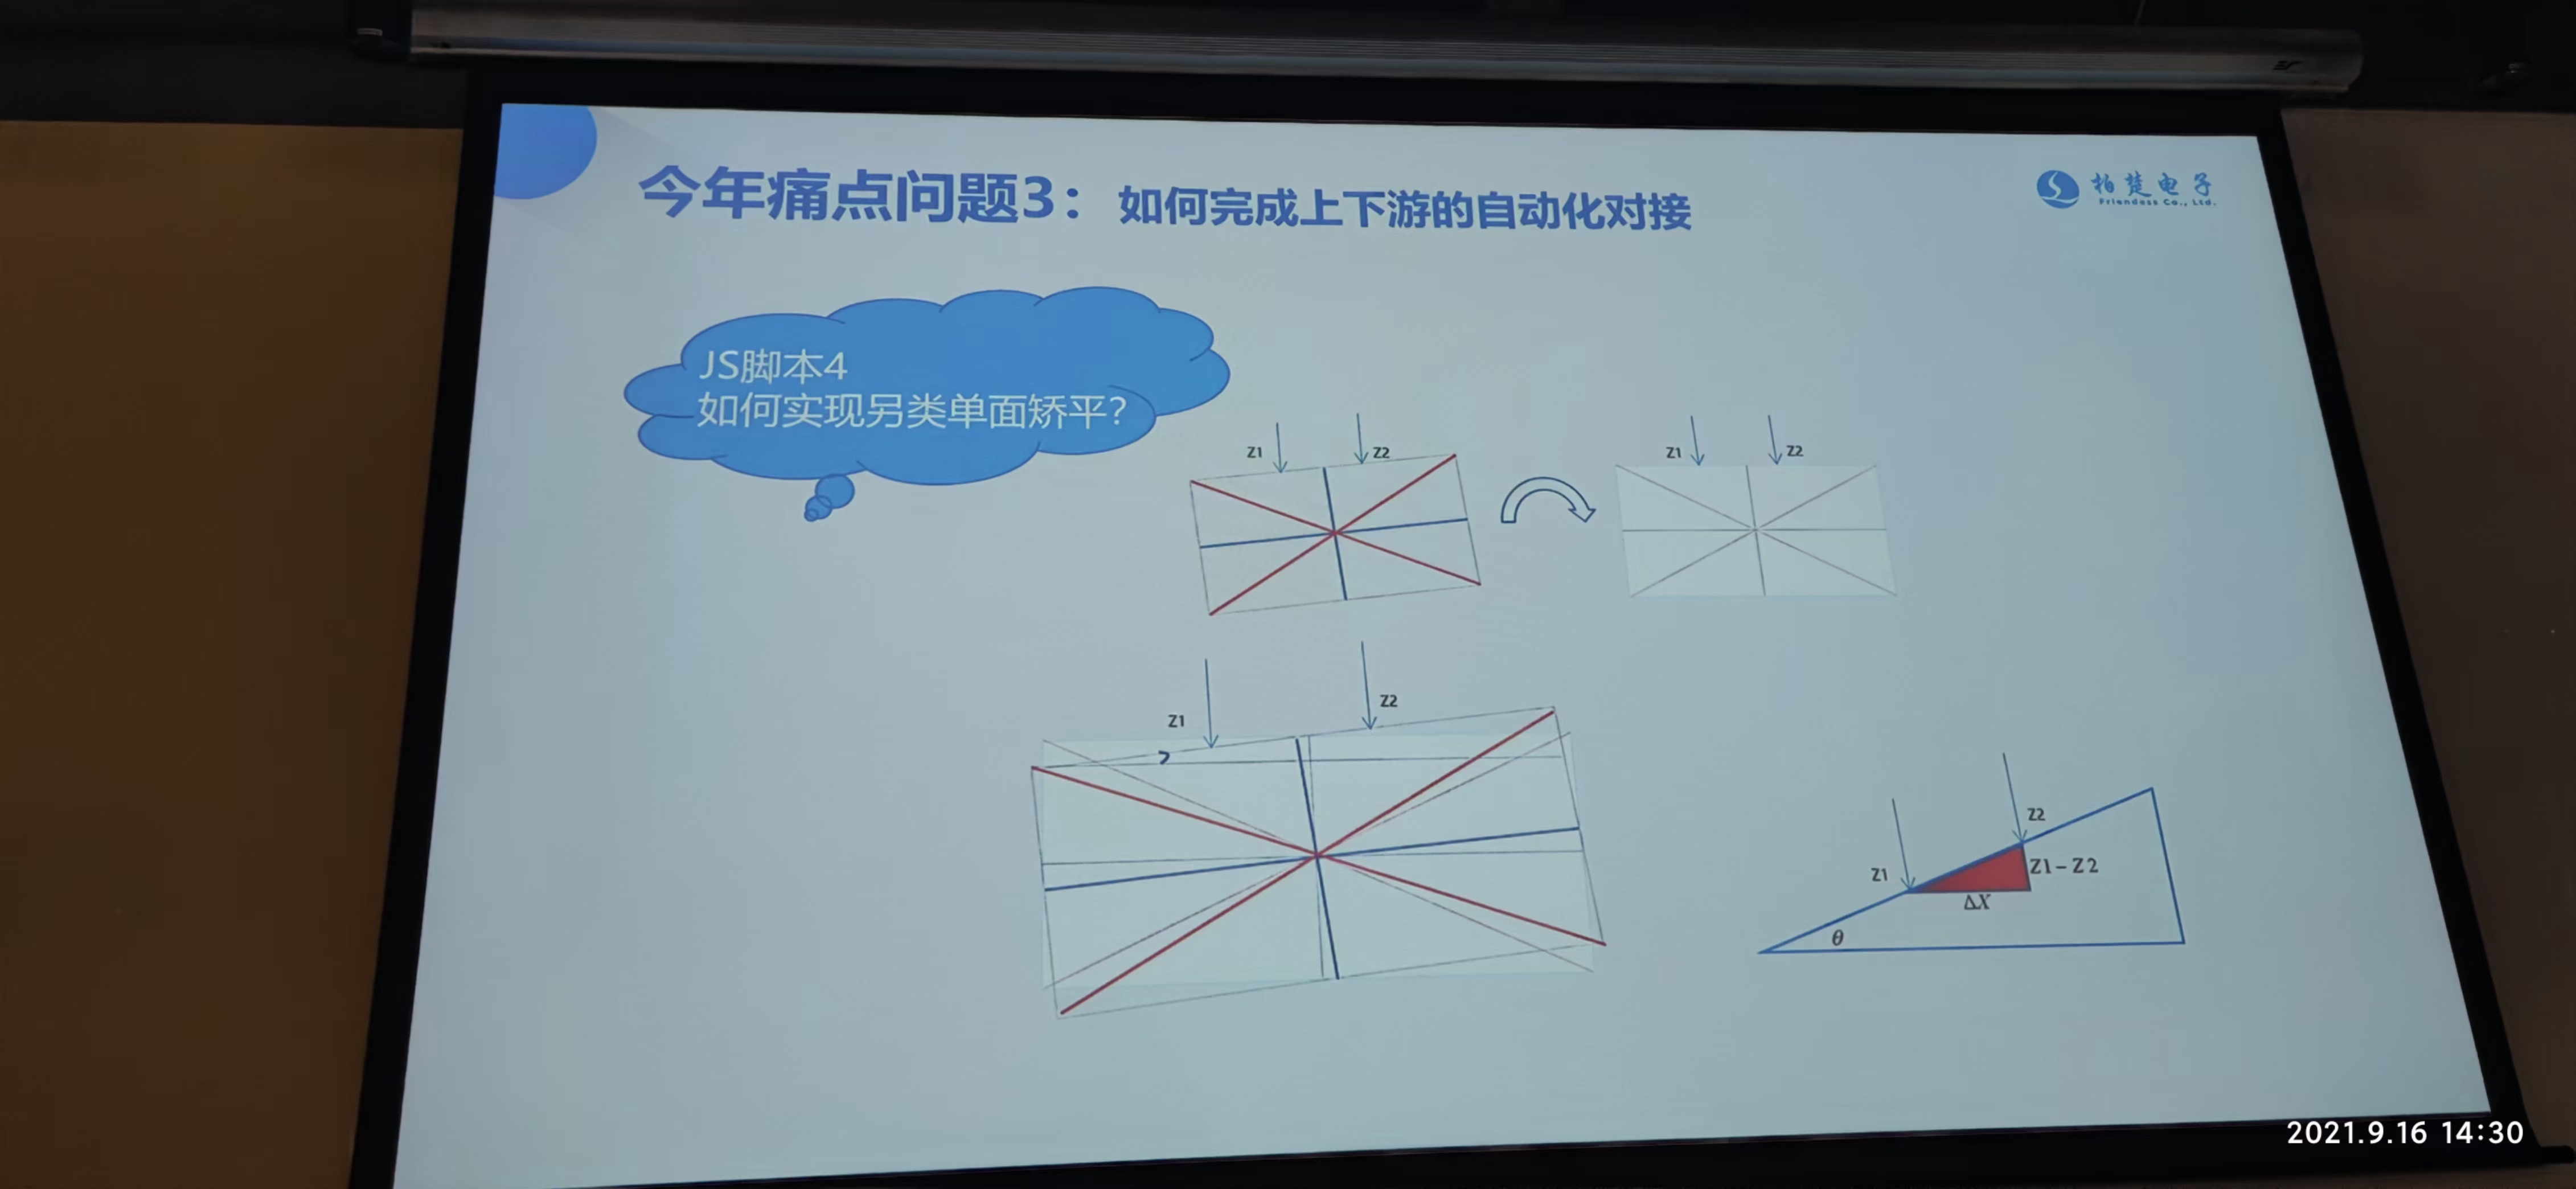 双成激光受邀参加柏楚电子第七届激光加工技术研讨会(图3)